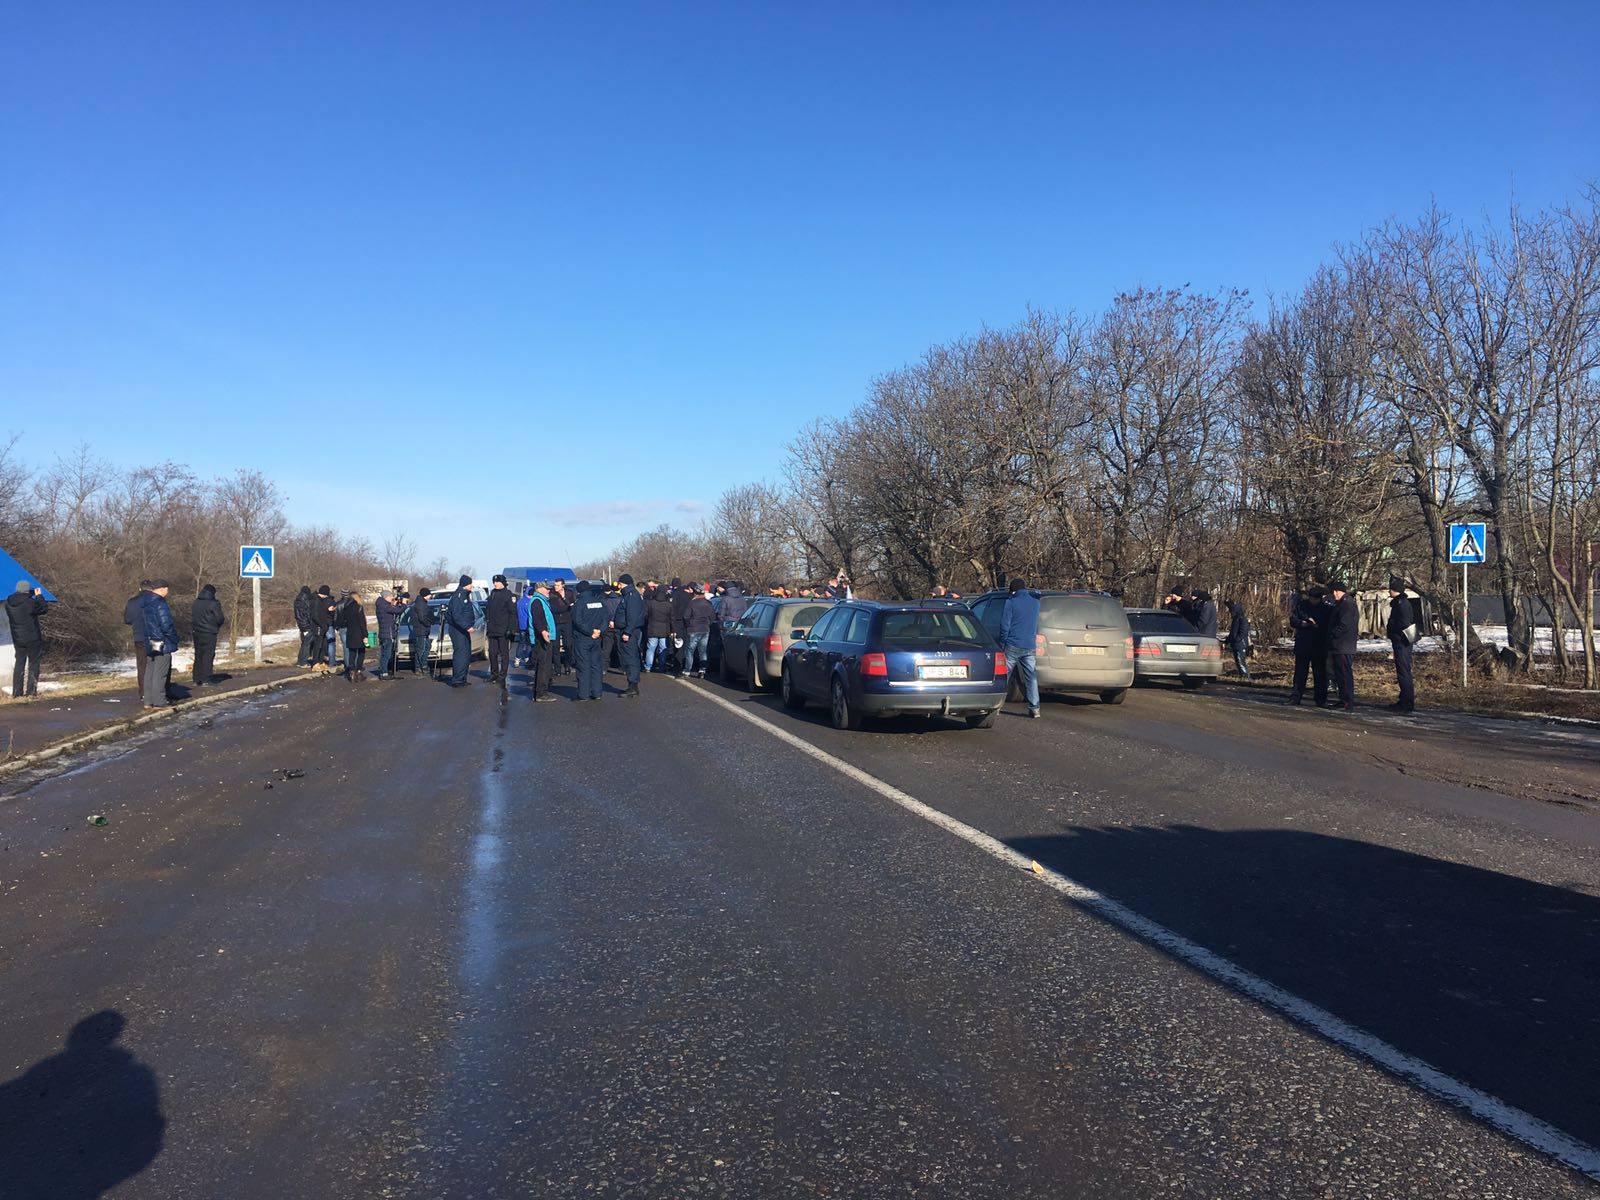 Чопський пограничный отряд информирует, что сегодня в 09.30 началась акция блокирования подъездной дороги к пункту пропуска «Ужгород».